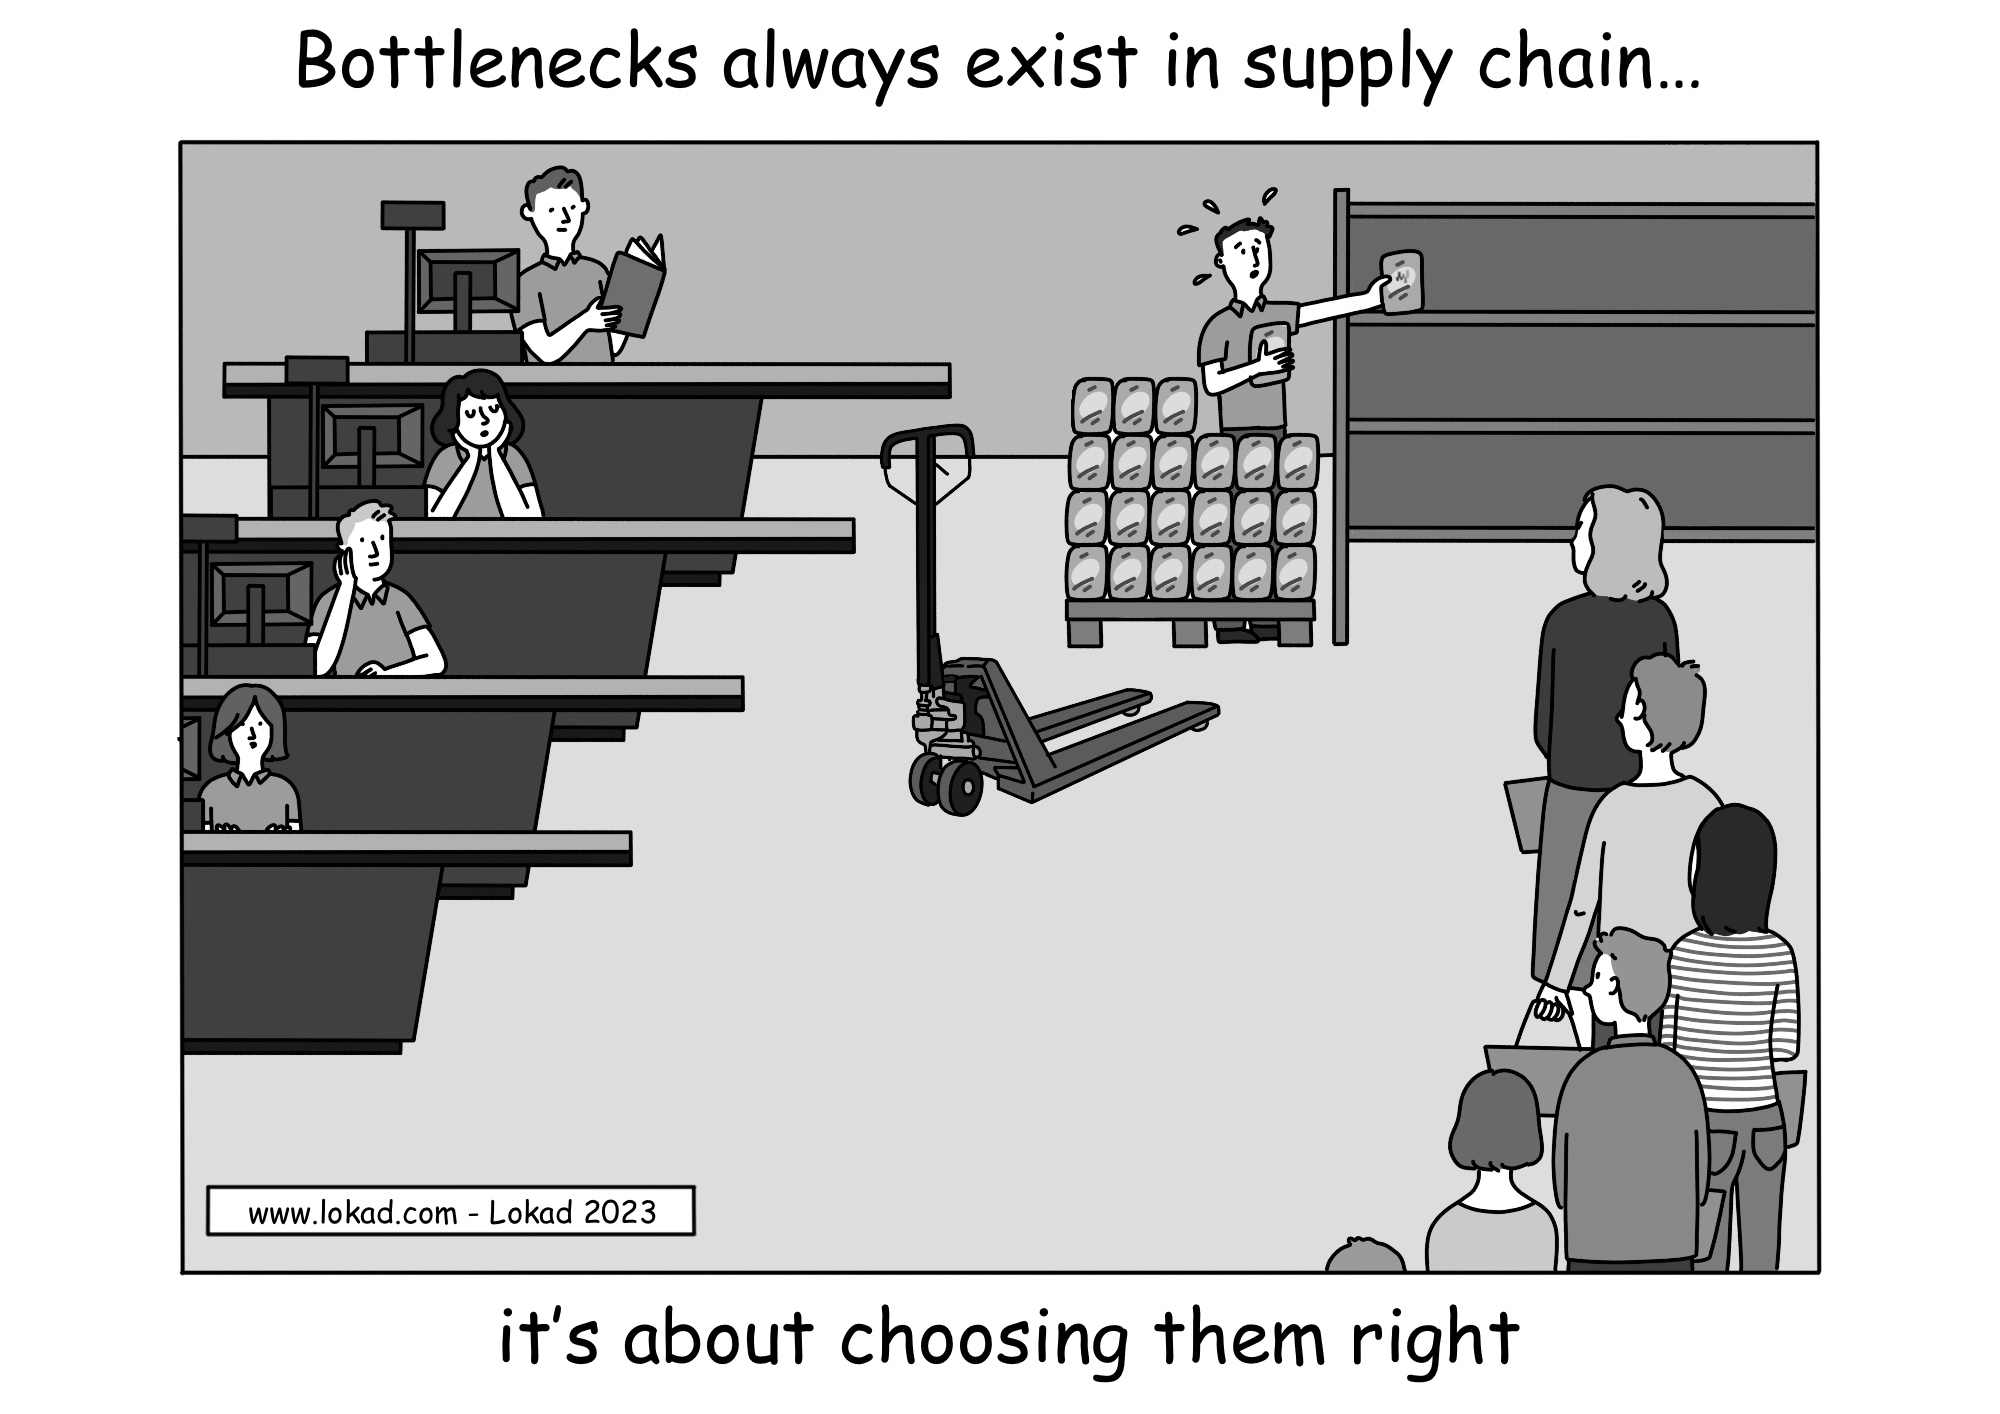 Bottlenecks always exist in supply chain